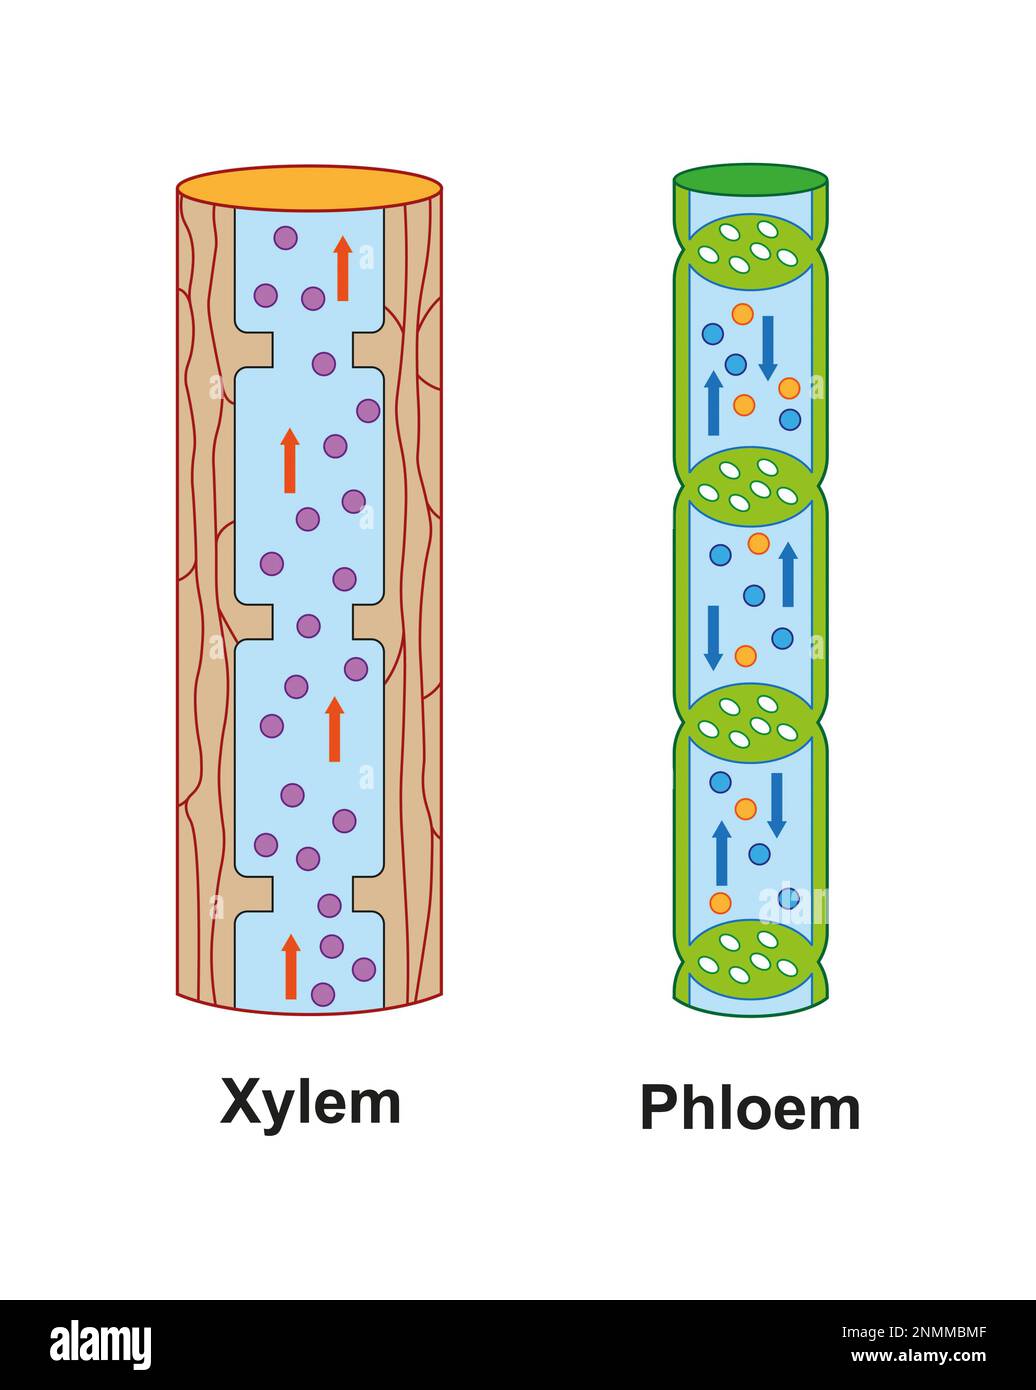 Xylem and phloem, illustration Stock Photo